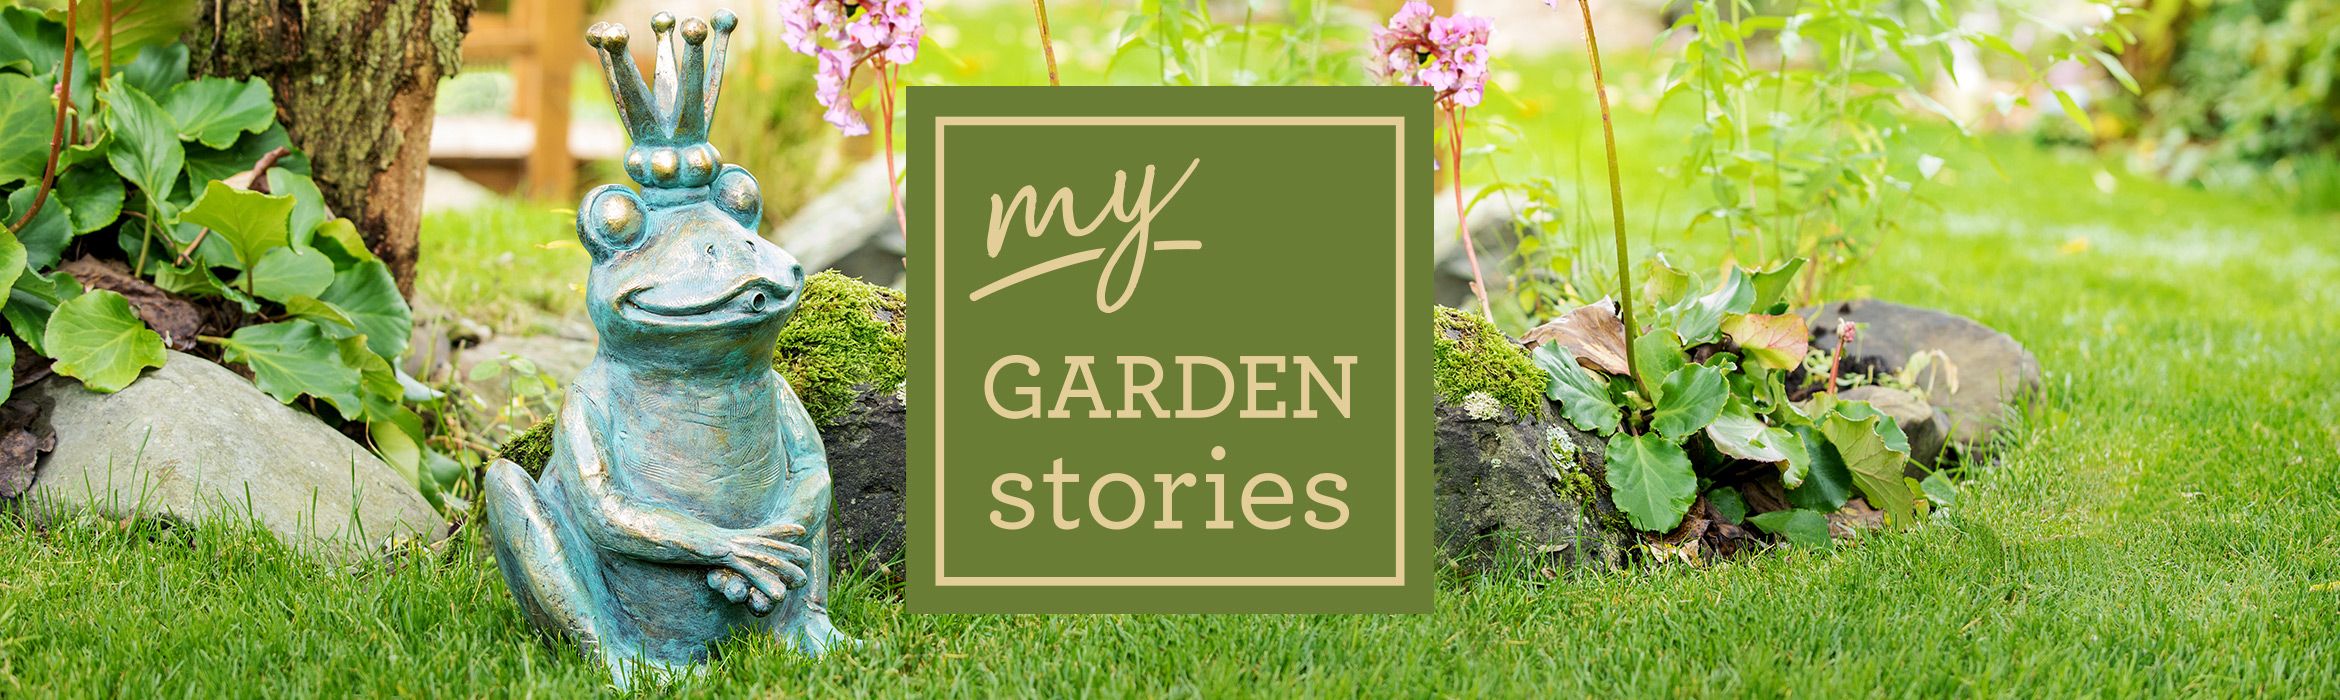 my GARDEN stories Gartenmöbel und Gartendeko